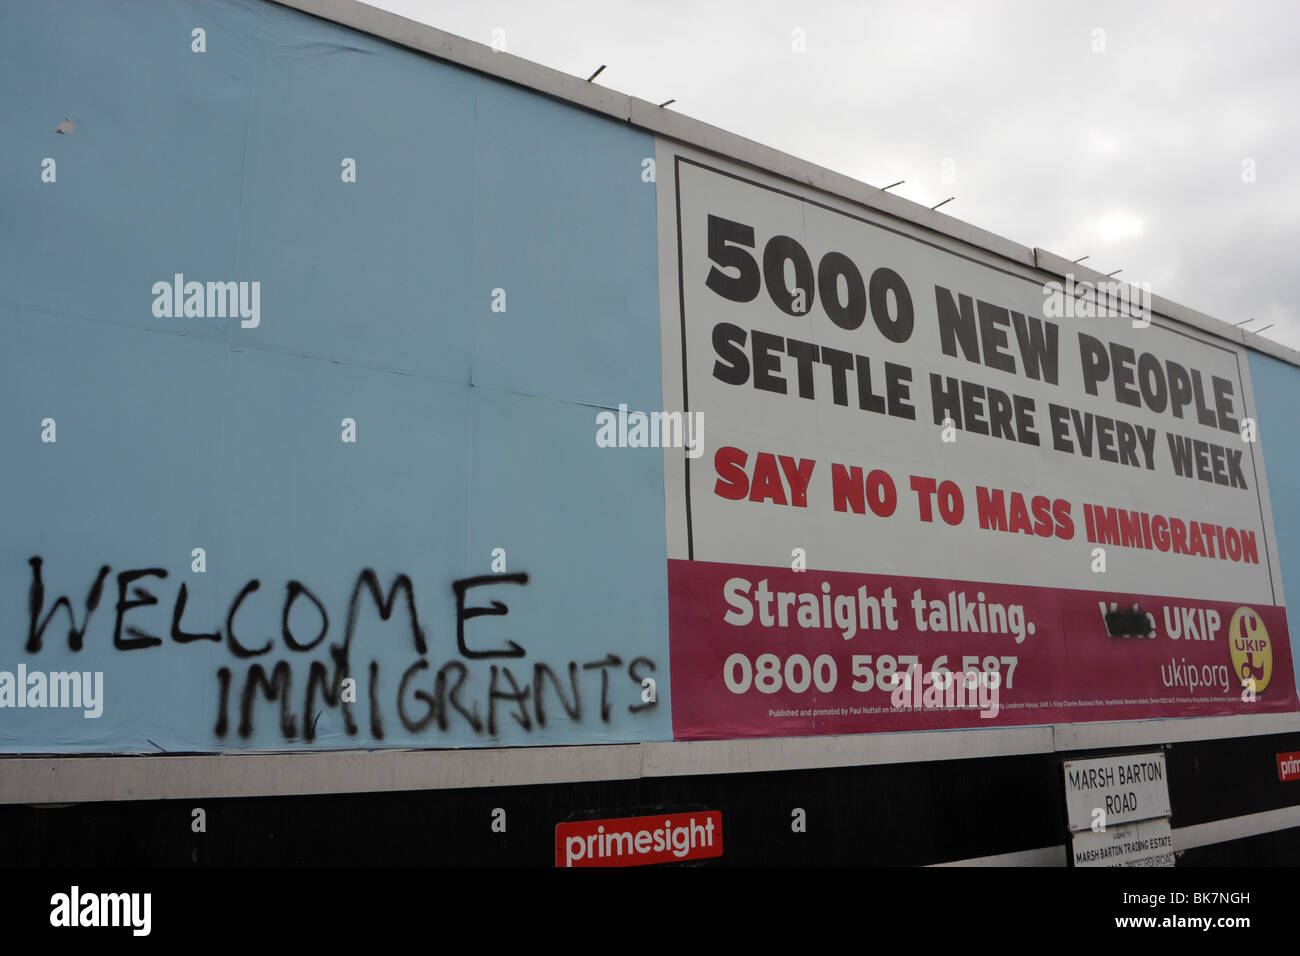 Panneau de l'UKIP avec message anti immigration au Royaume-Uni élection générale 2010. Désaccord dans le débat sur l'immigration Banque D'Images